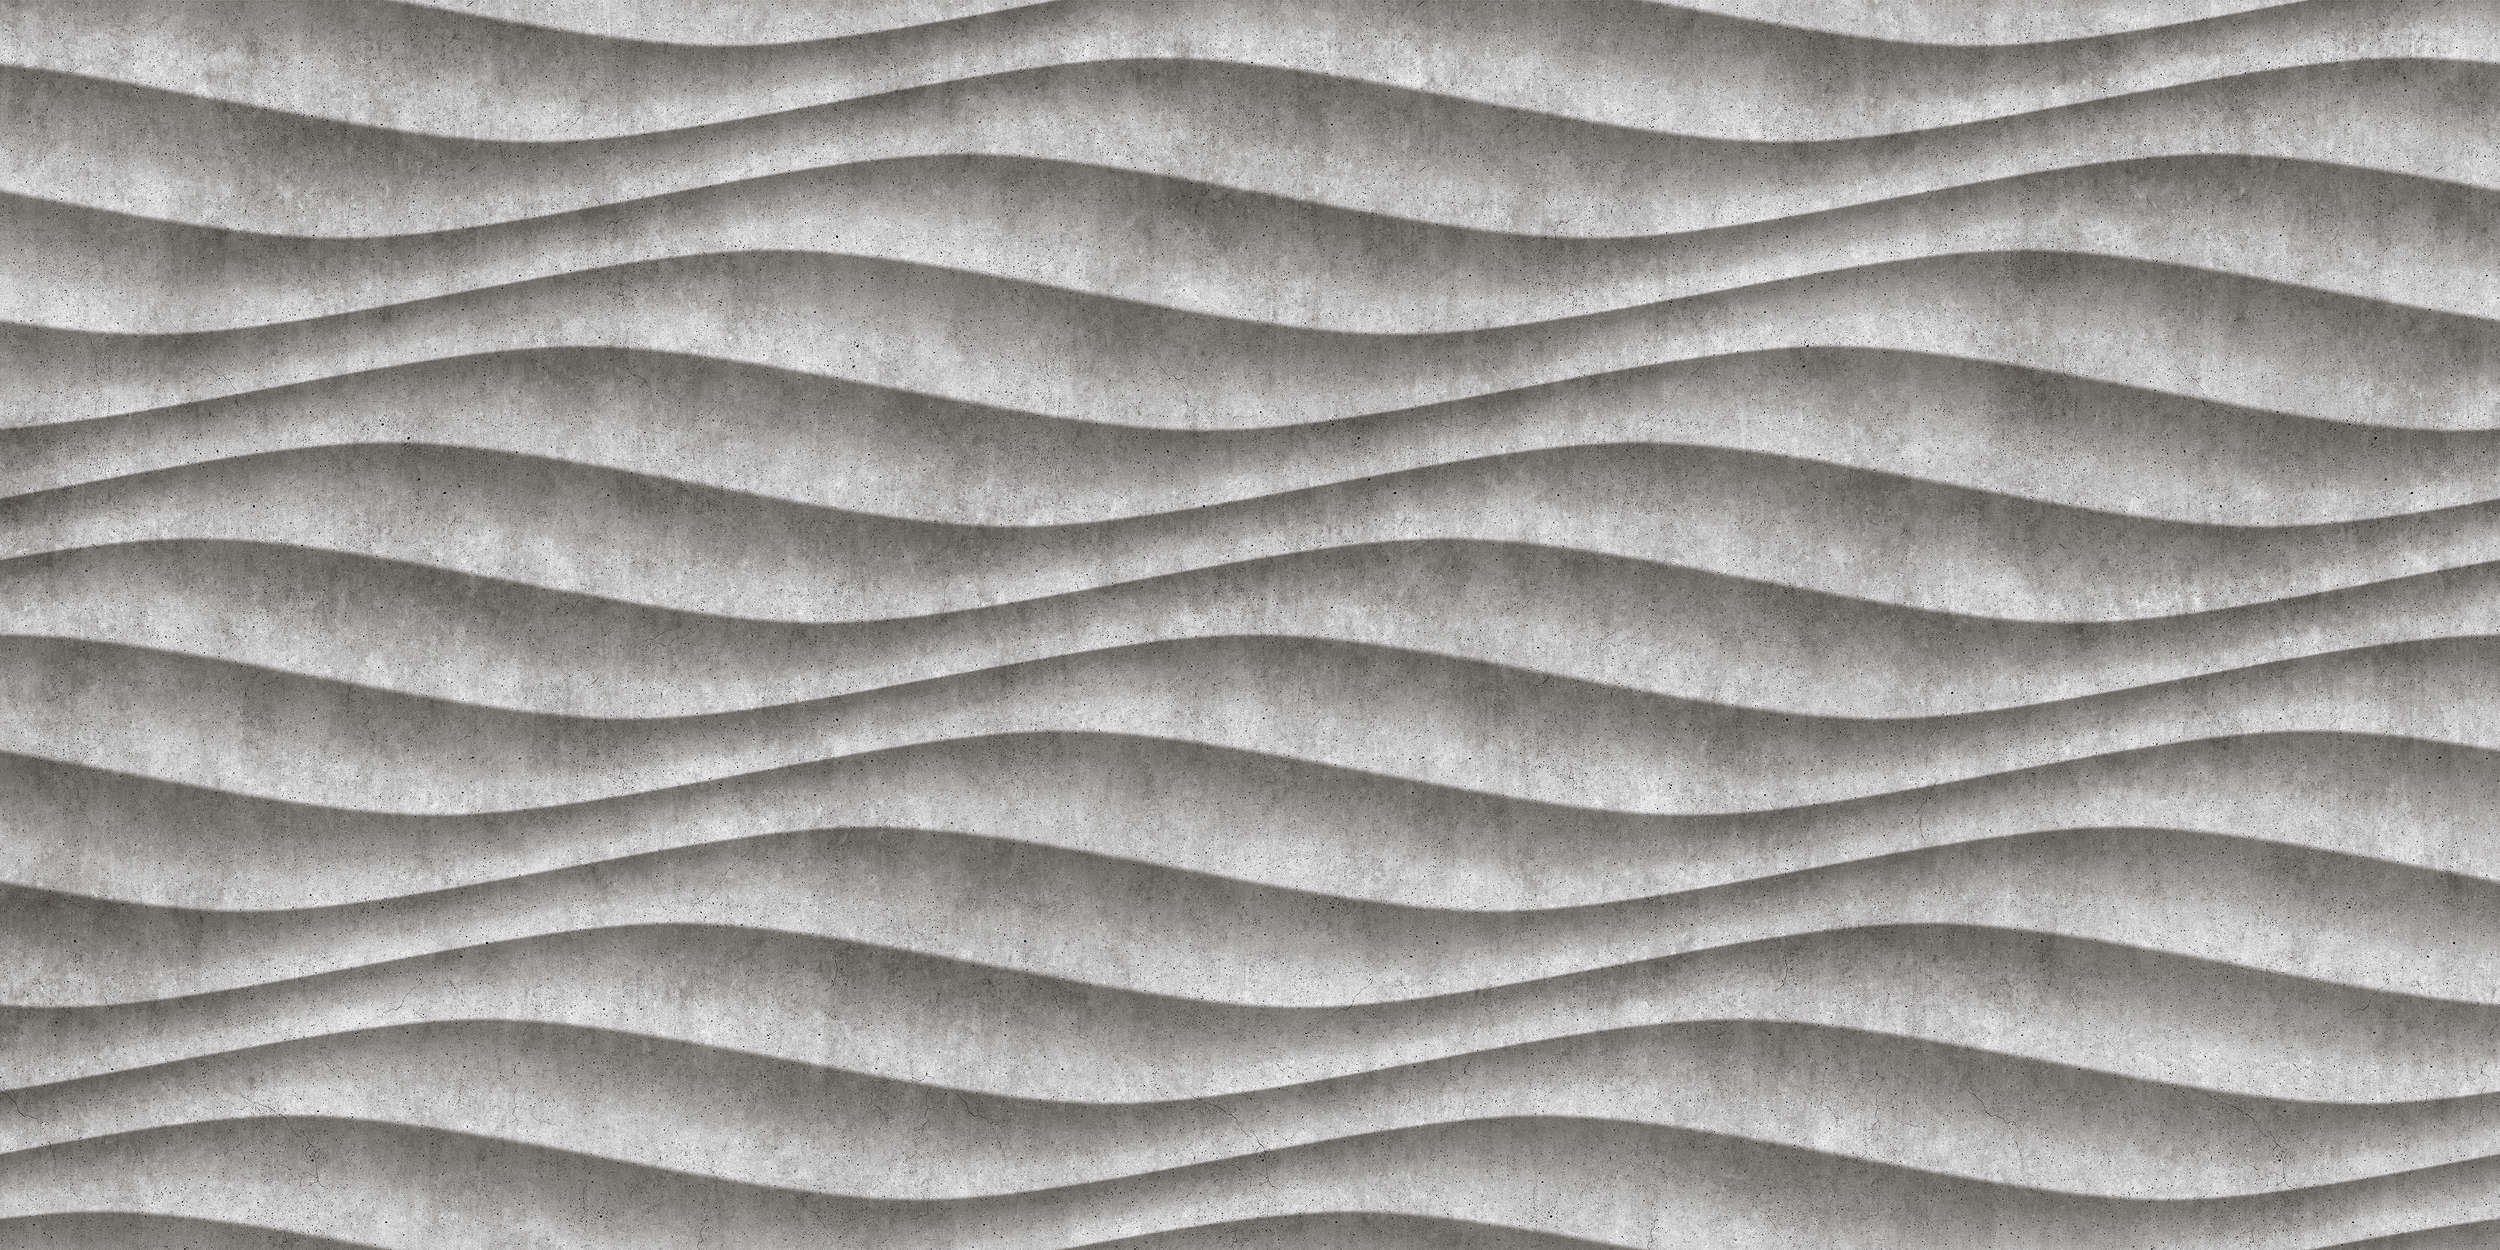             Canyon 2 - Papier peint 3D cool en béton ondulé - gris, noir | nacré intissé lisse
        